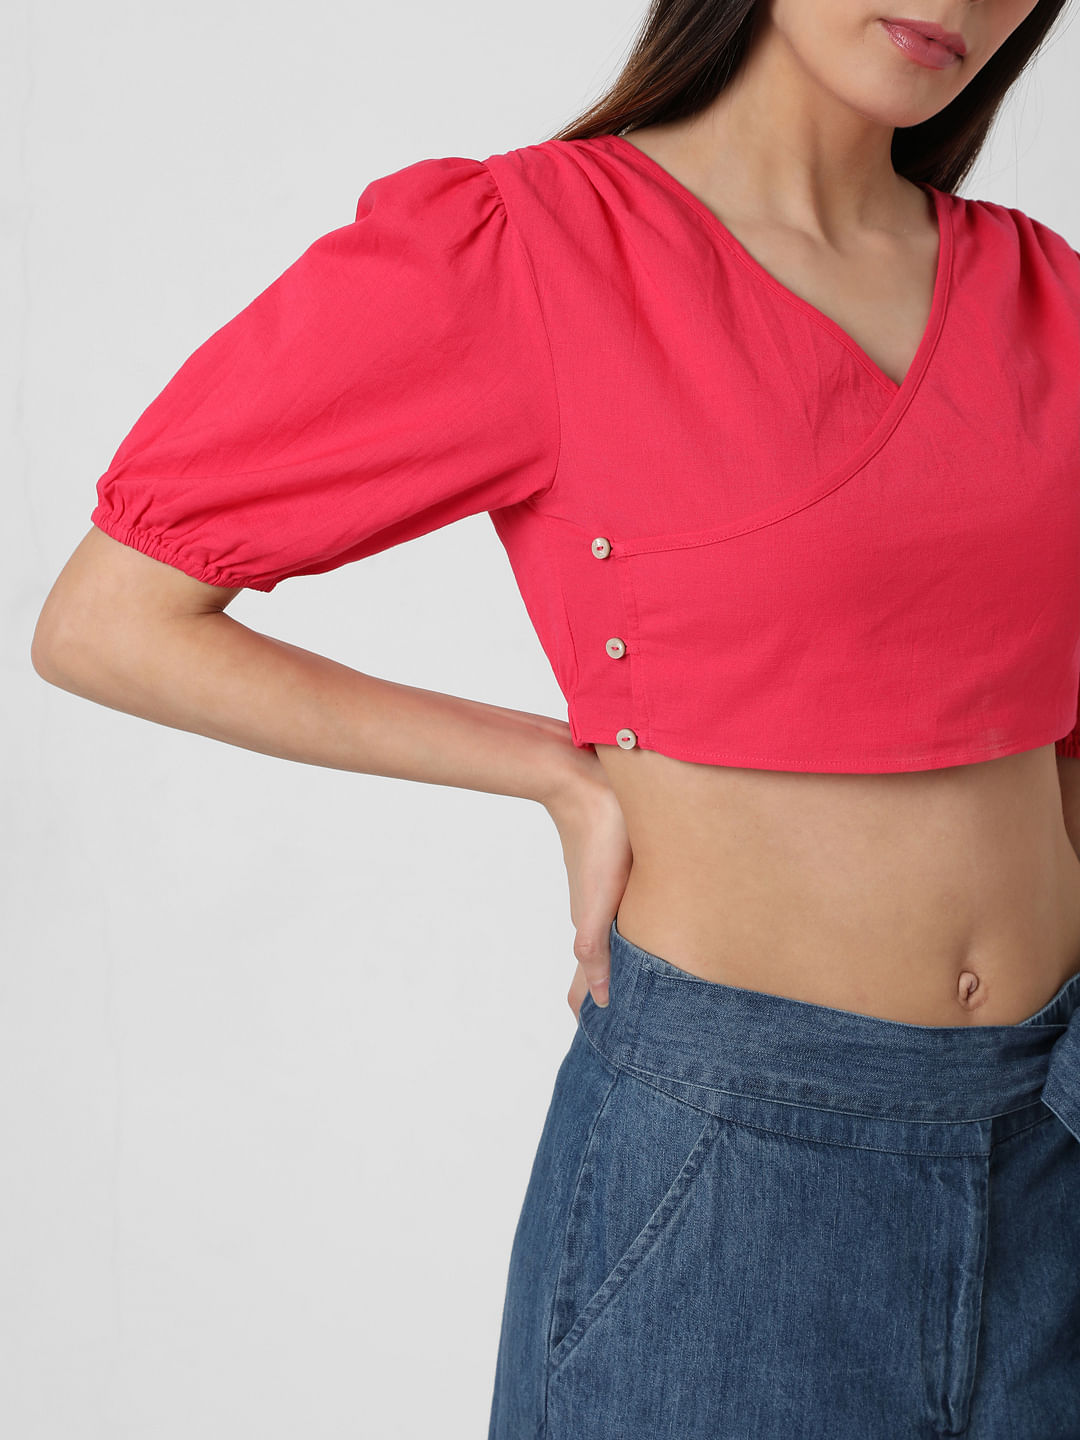 Vero Moda crop top WOMEN FASHION Shirts & T-shirts Crop top Slip Pink L discount 56% 